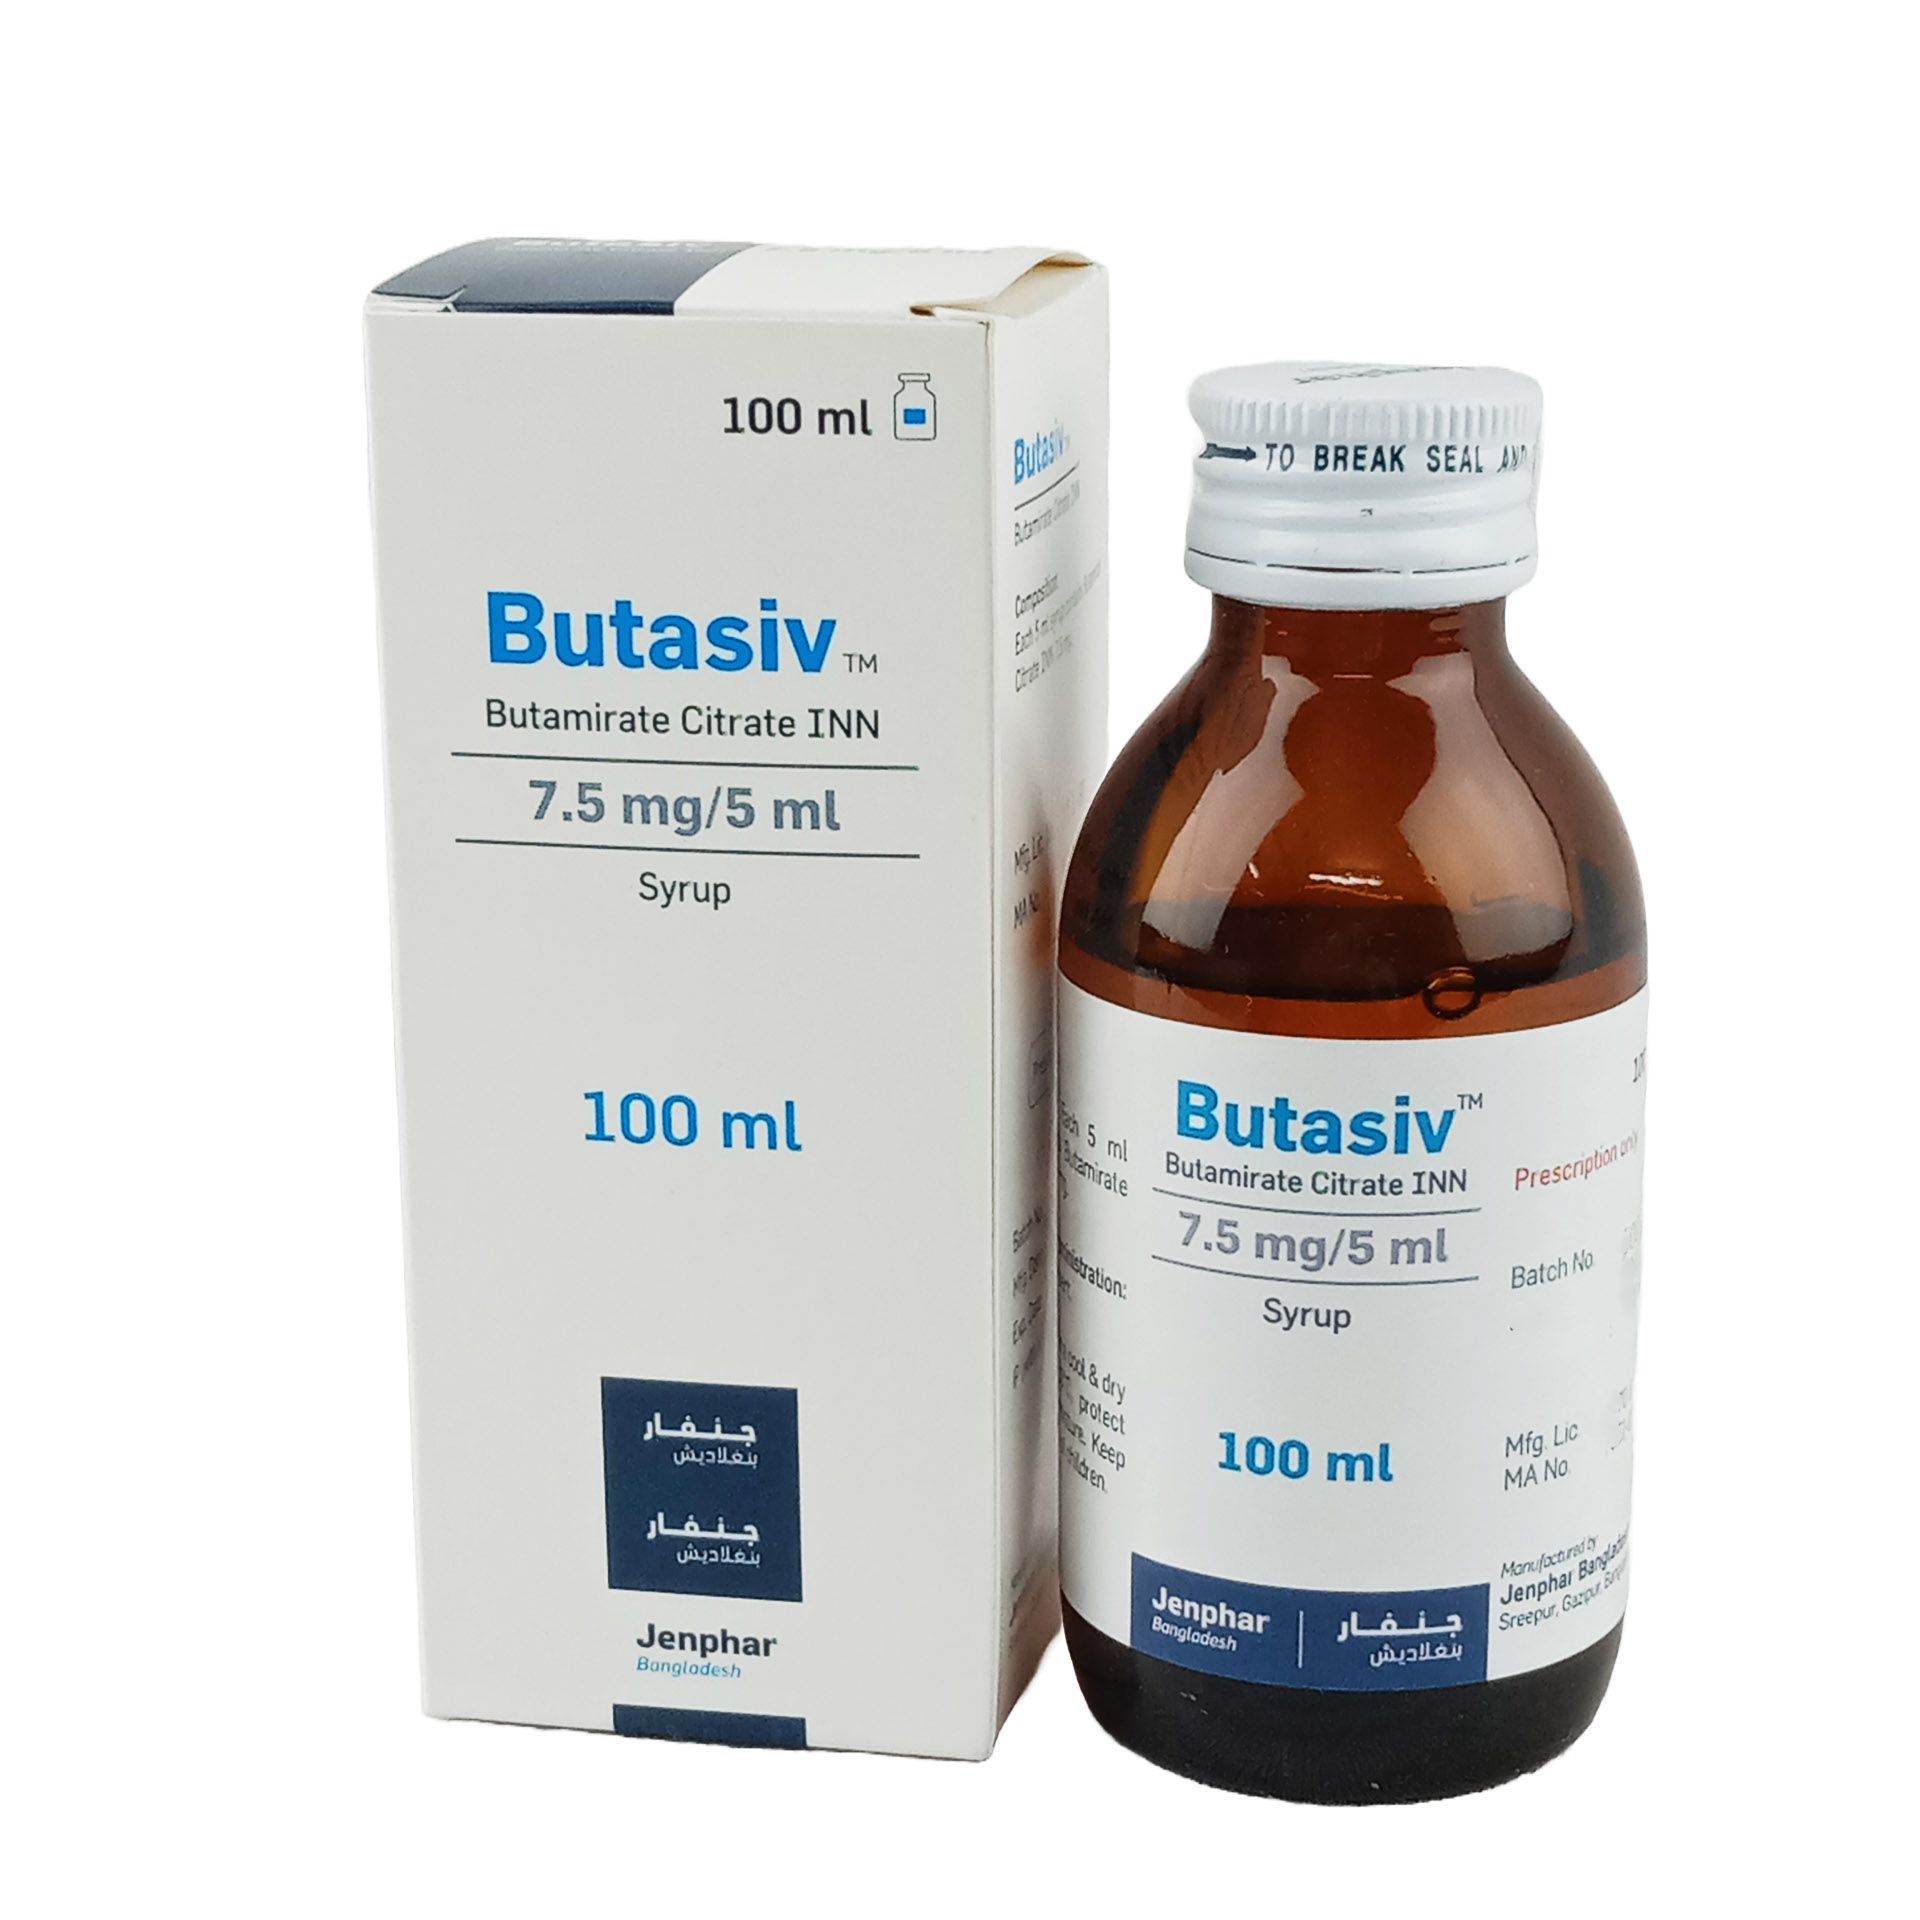 Butasiv 7.5mg/5ml Syrup